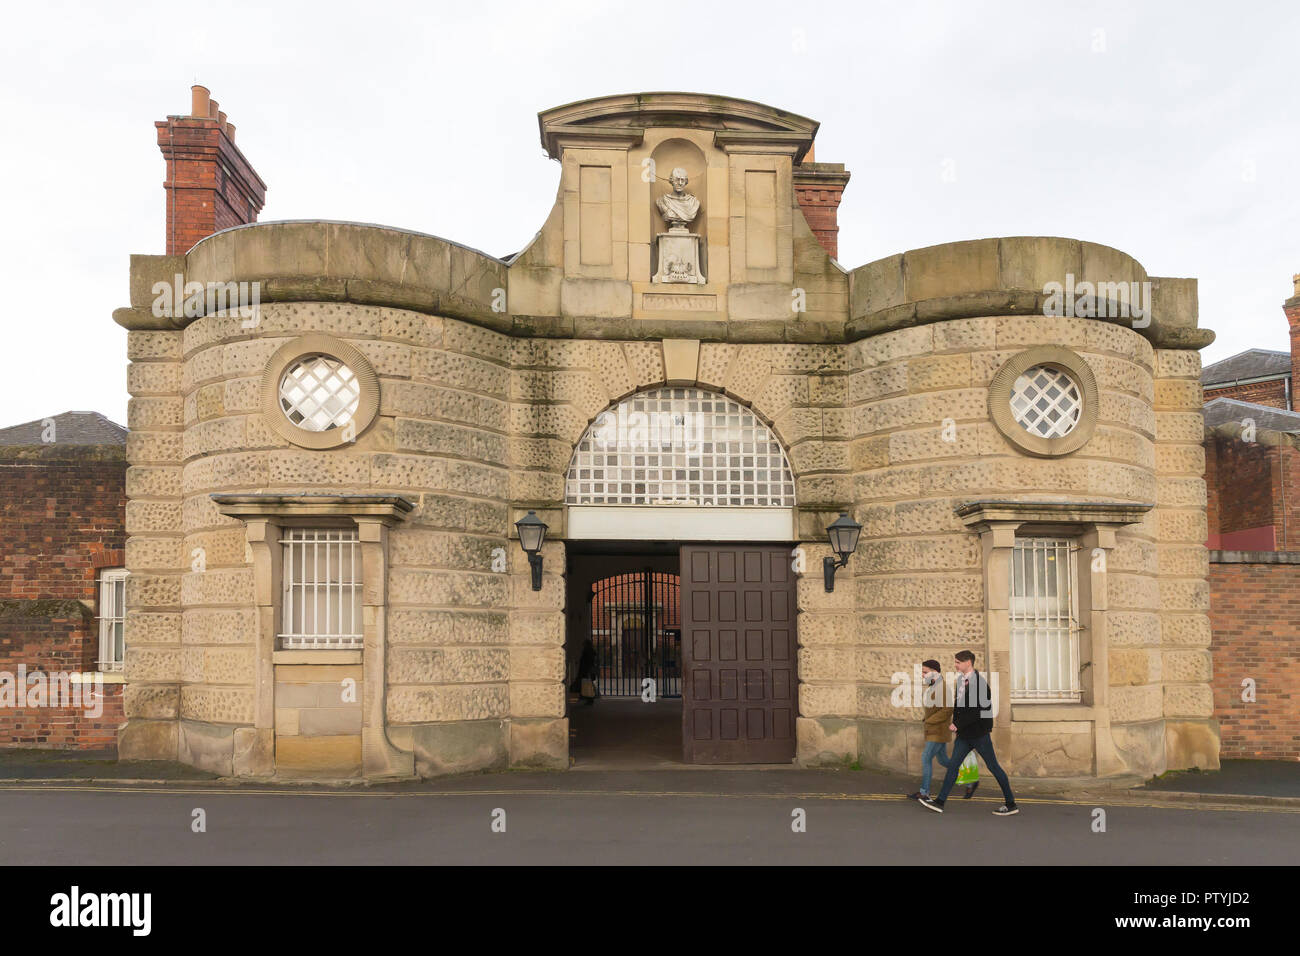 La cárcel de Shrewsbury Entrada, Dana, Shrewsbury, Shropshire, Inglaterra, Reino Unido, GB Foto de stock